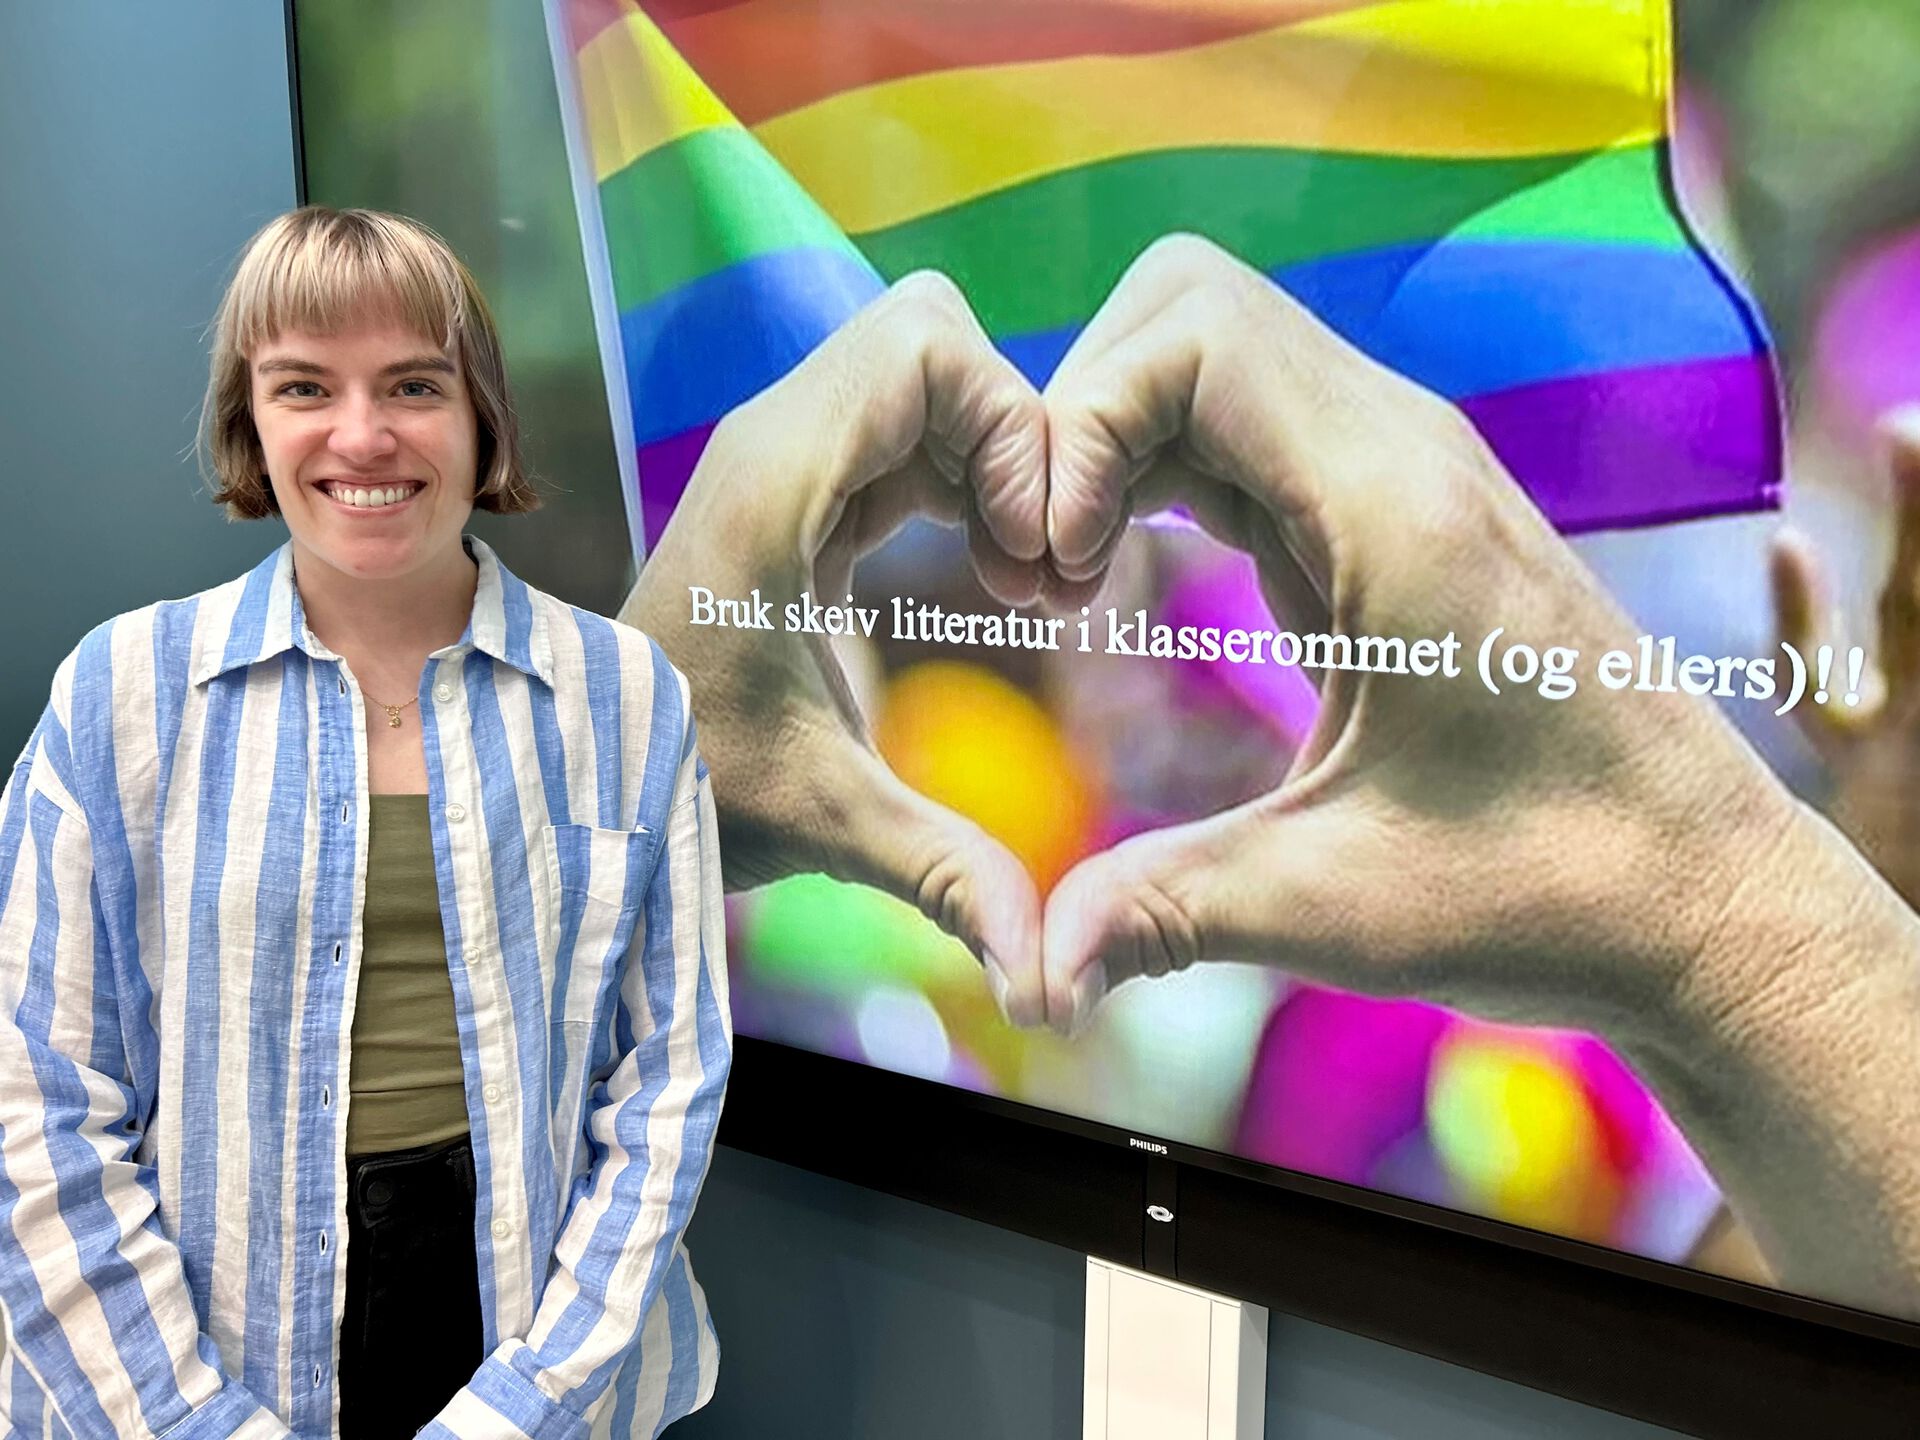 Henrikke Nygaard står foran en stor skjerm. På skjermen er det bilde av to hender som former et hjerte. I bakgrunnen vaier regnbueflagget.